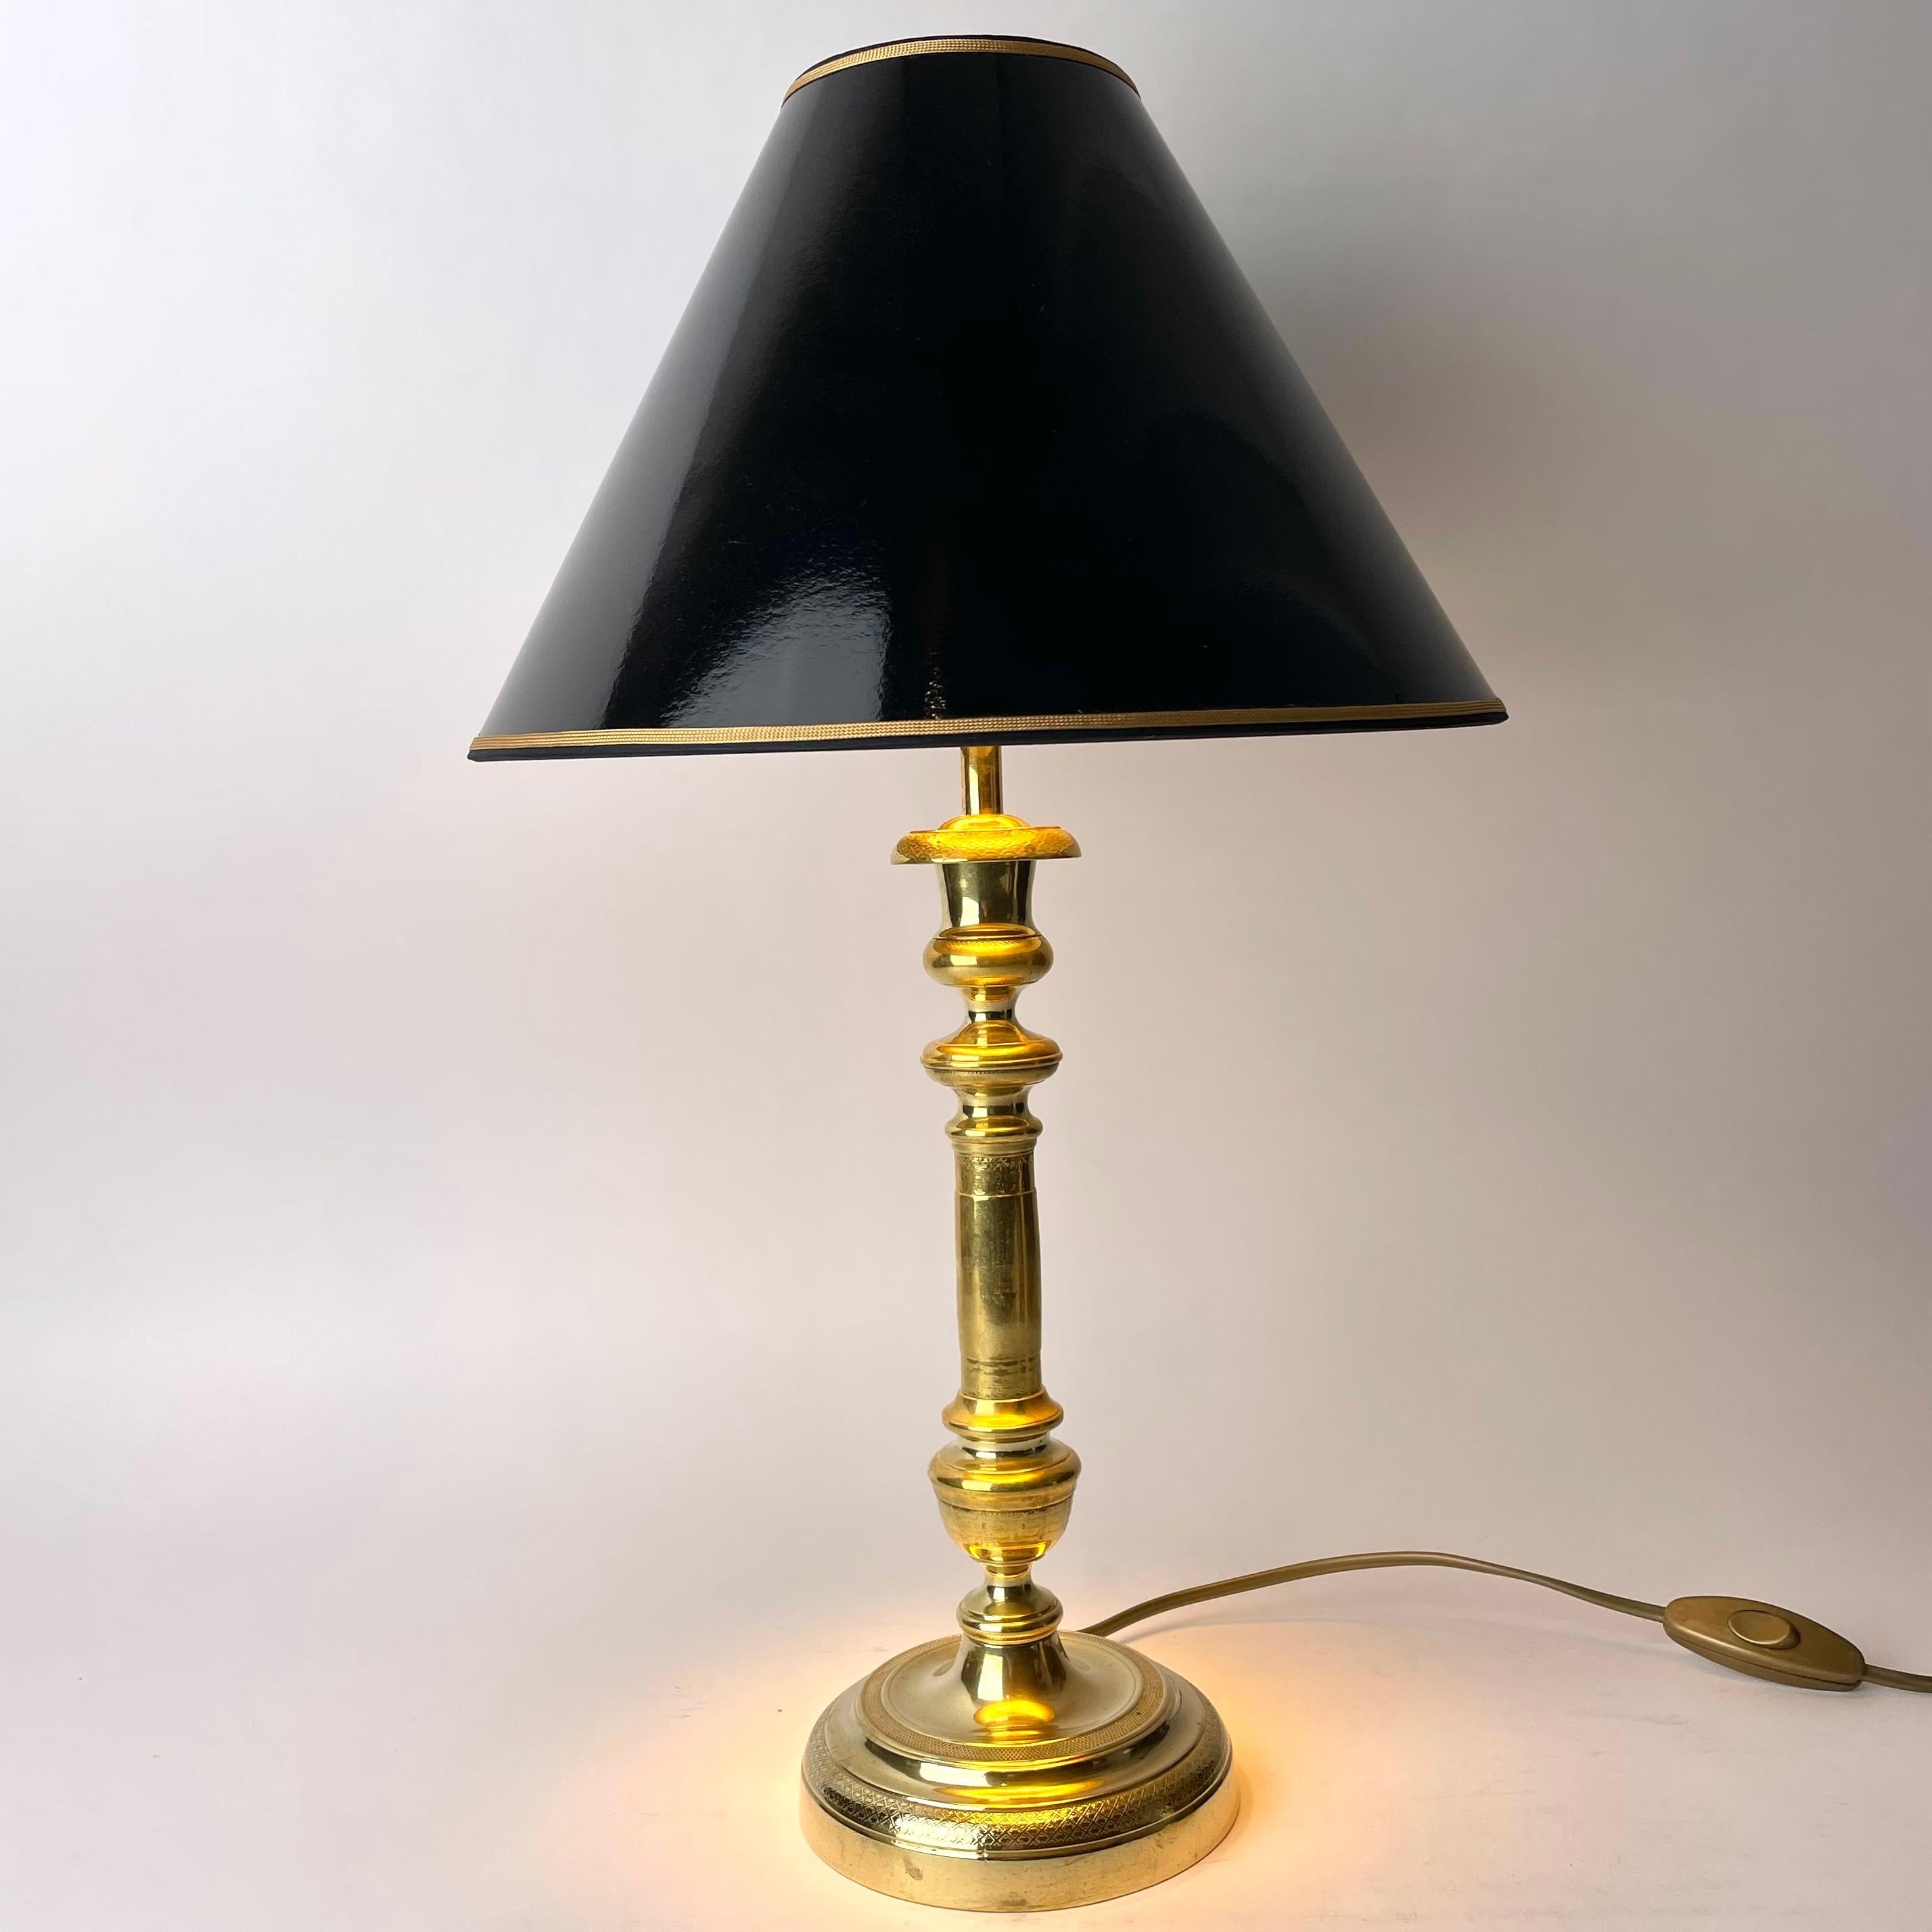 Magnifique lampe de table, à l'origine un chandelier Empire en bronze provenant de France dans les années 1820.

Électricité refaite à neuf 

Nouveaux abat-jour en laque noire avec dorure à l'intérieur pour donner une lueur douillette.

Usure